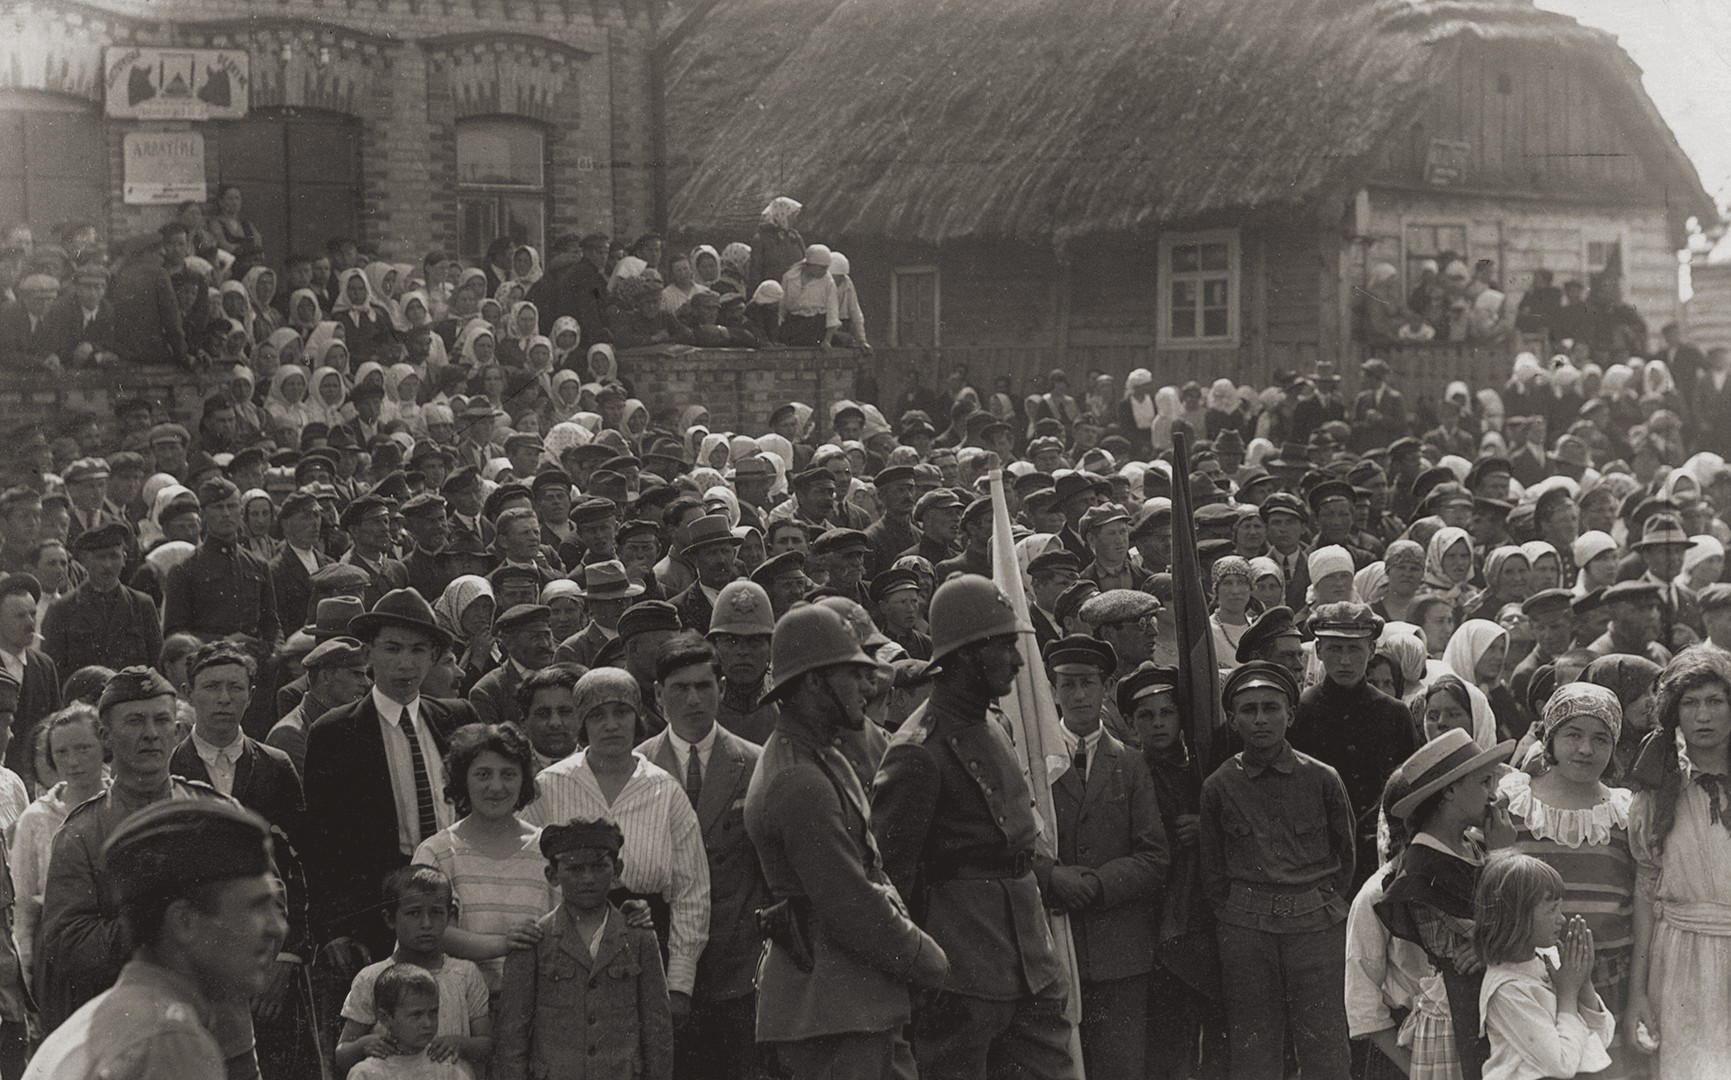 Tautos šventės dalyviai Alytuje. Priekyje su uniformomis stovi Alytaus policininkai. 1924 m. gegužės 15 d. Fot. Isaakas Abramavičius. F 17417/2 Rev